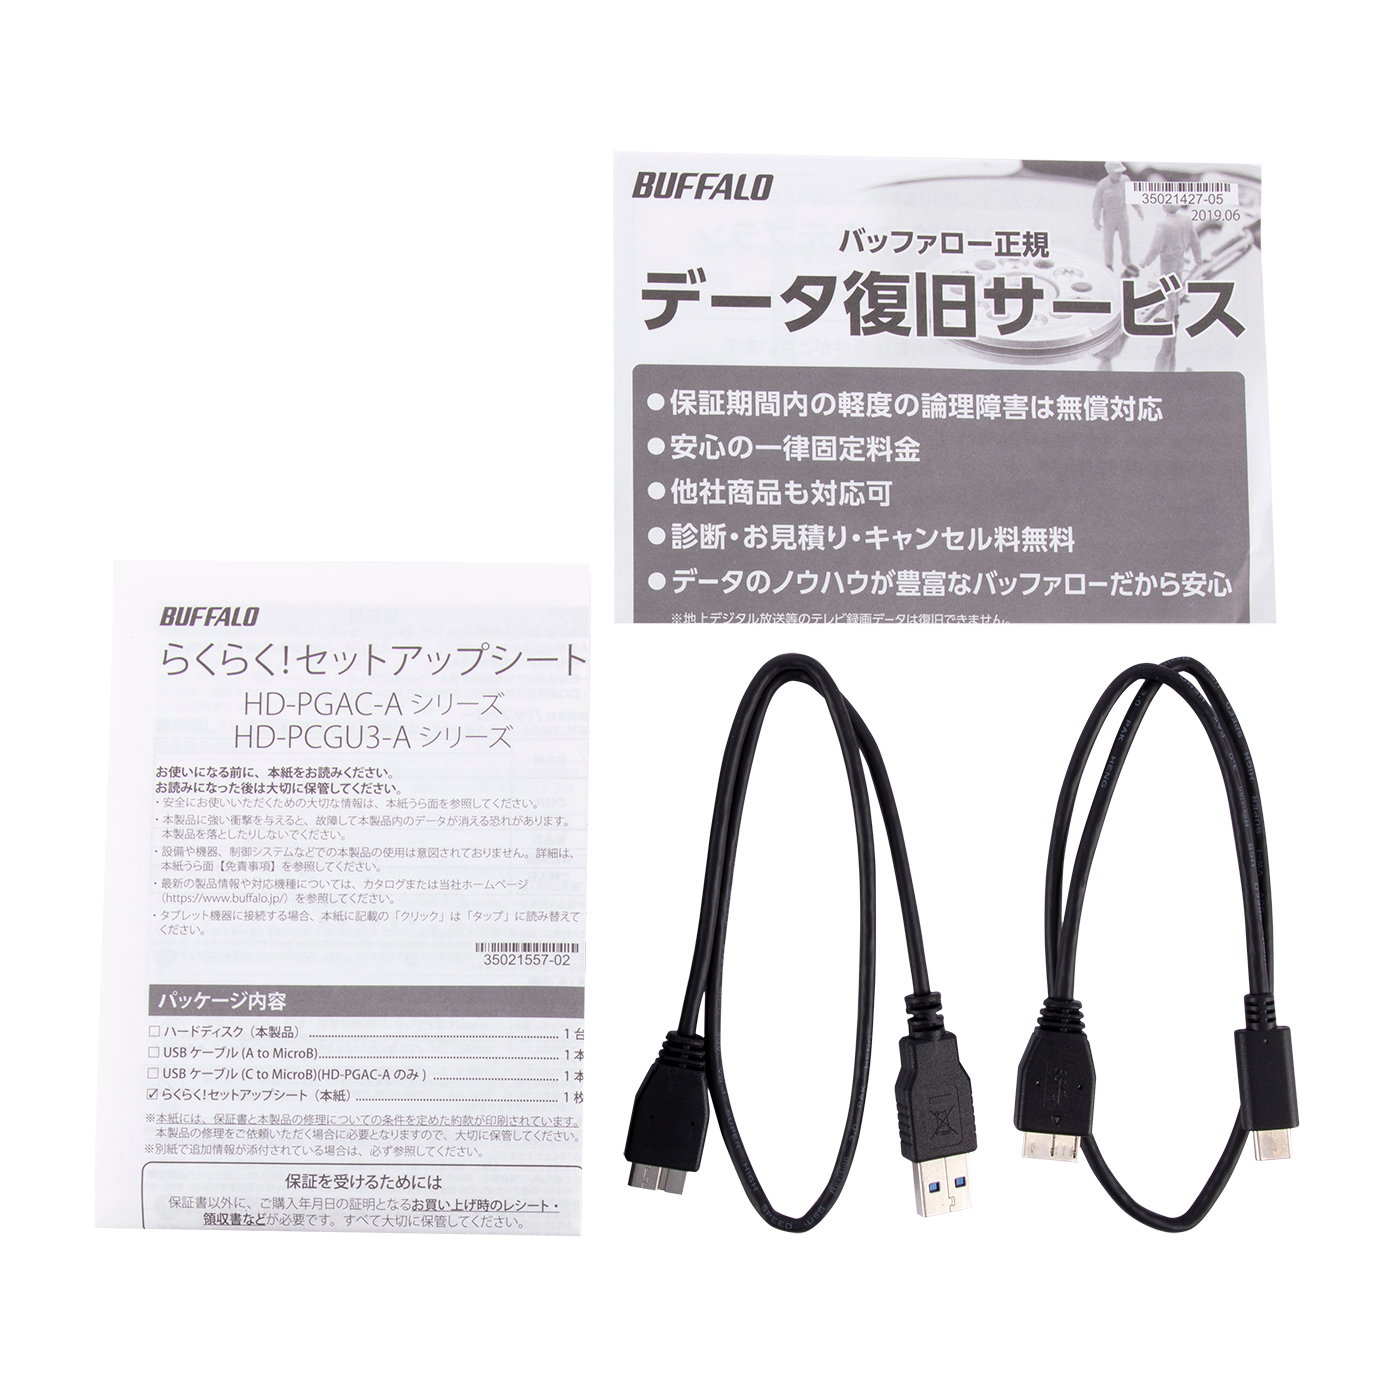 バッファロー(BUFFALO) HD-PGAC2U3-BA(ブラック) USB Type-C & USB Type-A ケーブル付属 ポータブルHDD 2TB